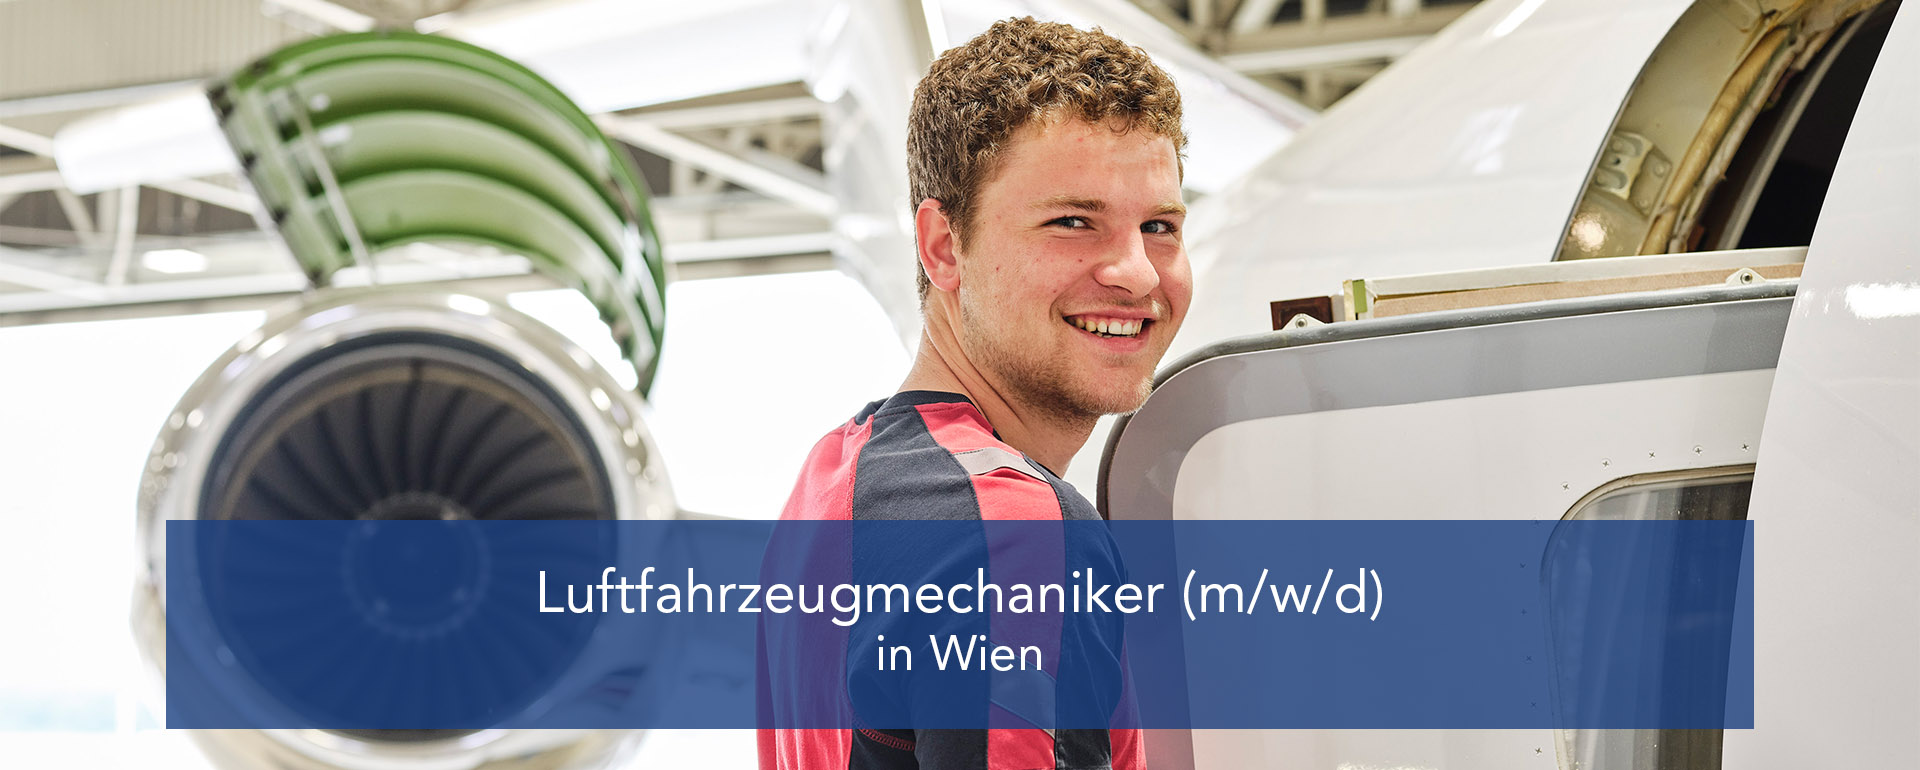 Luftfahrzeugmechaniker (m/w/d) in Wien